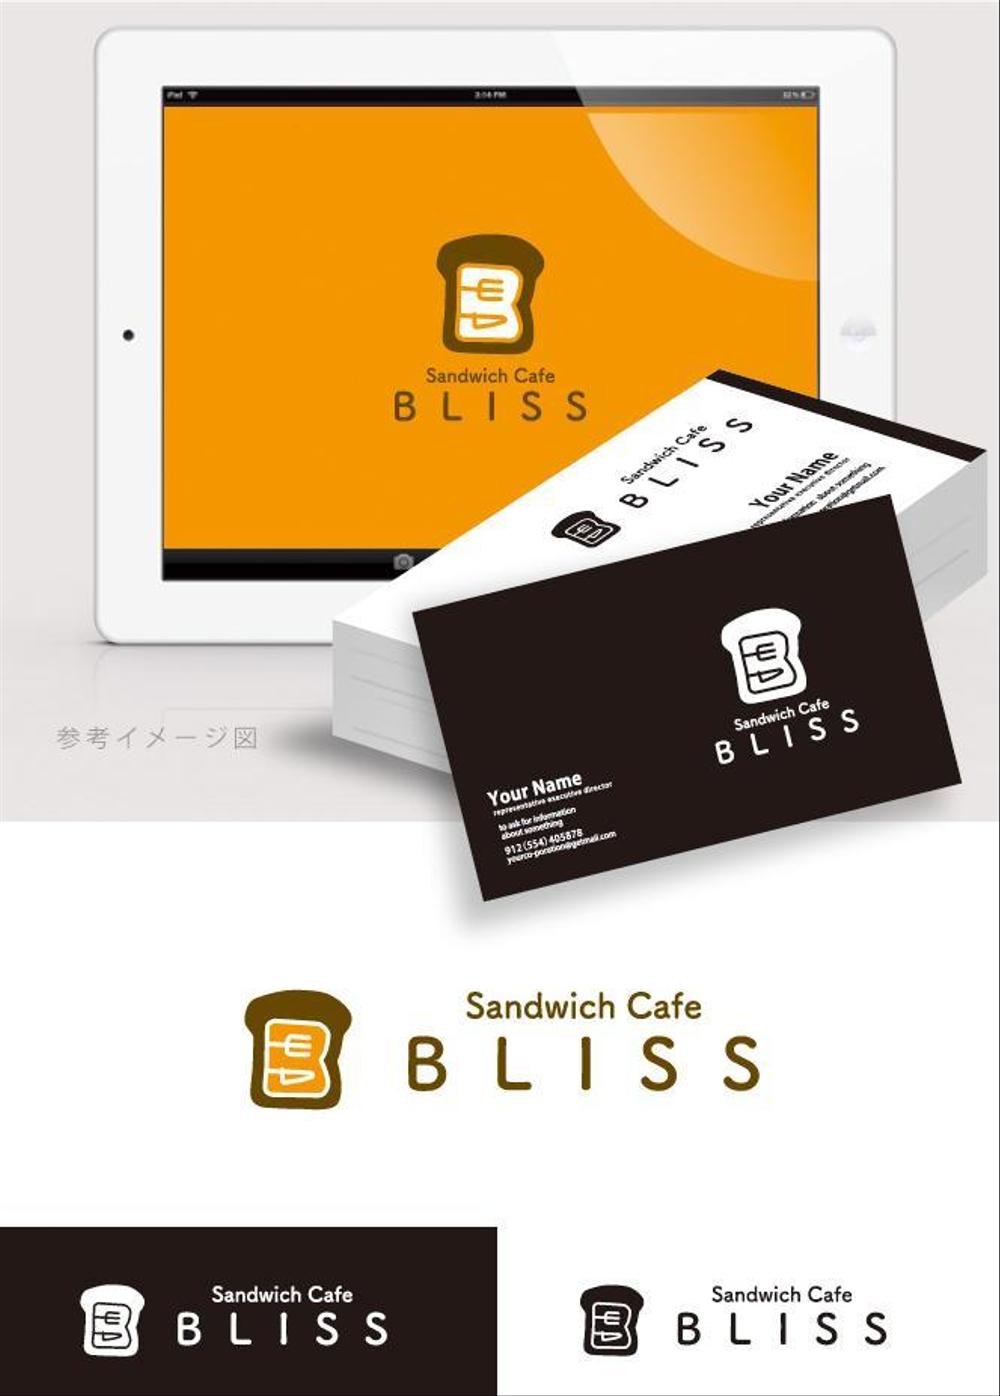 オープンサンドウィッチ店  【Sandwich Cafe  BLISS】のロゴ